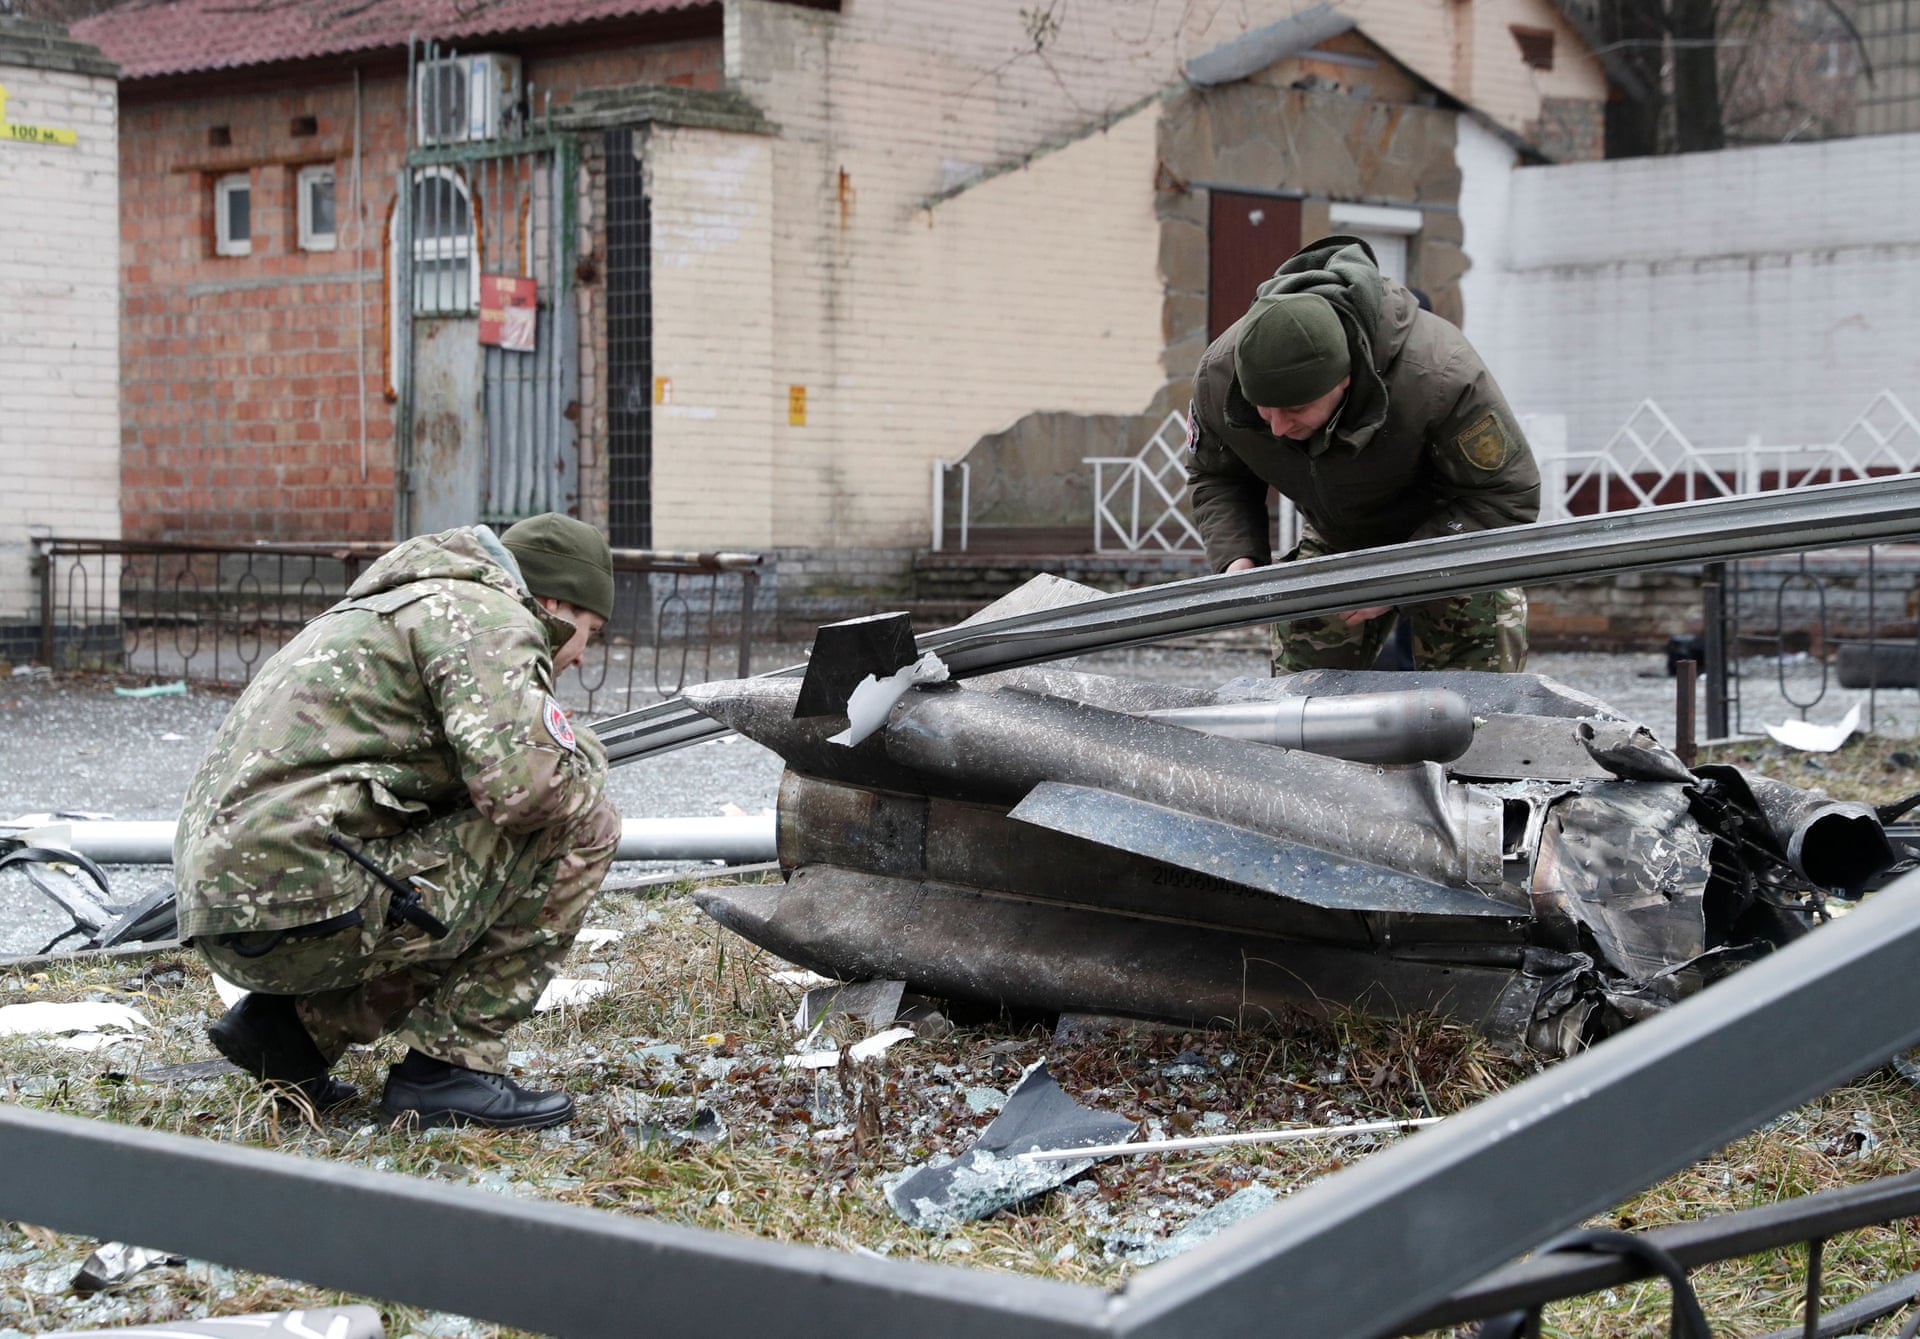 Πόλεμος στην Ουκρανία: Νεκροί περισσότεροι από 2.000 Ουκρανοί πολίτες έως σήμερα, αναφέρει το Κίεβο